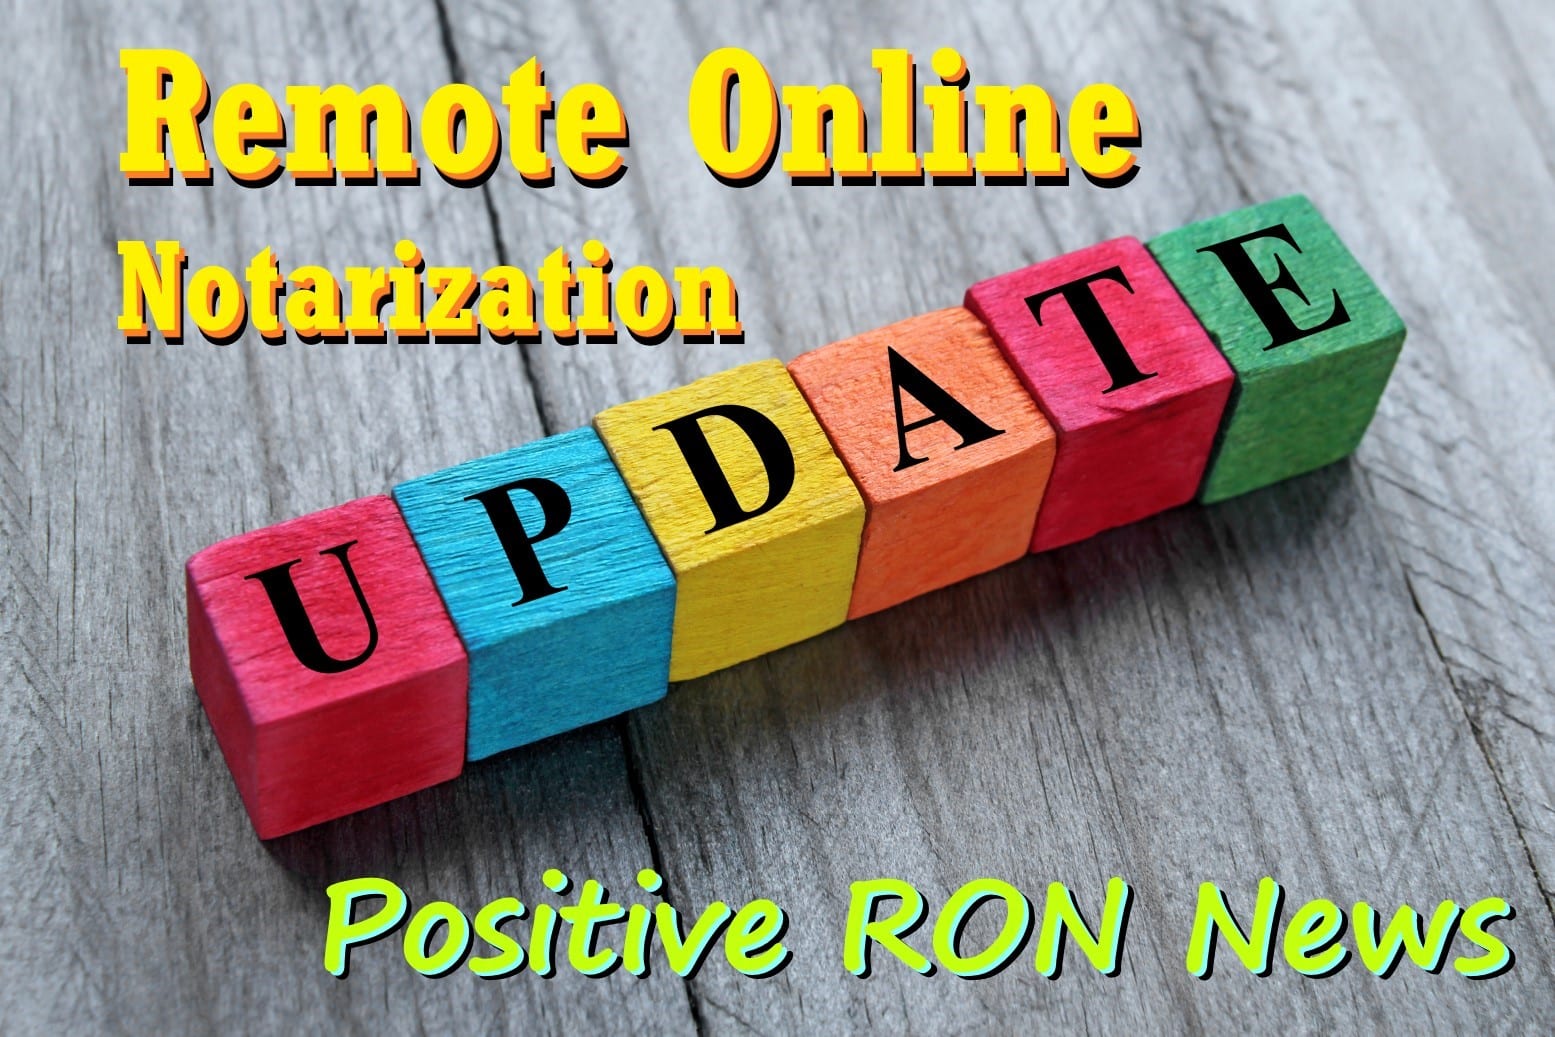 3 ways remote online notarization benefits Notaries